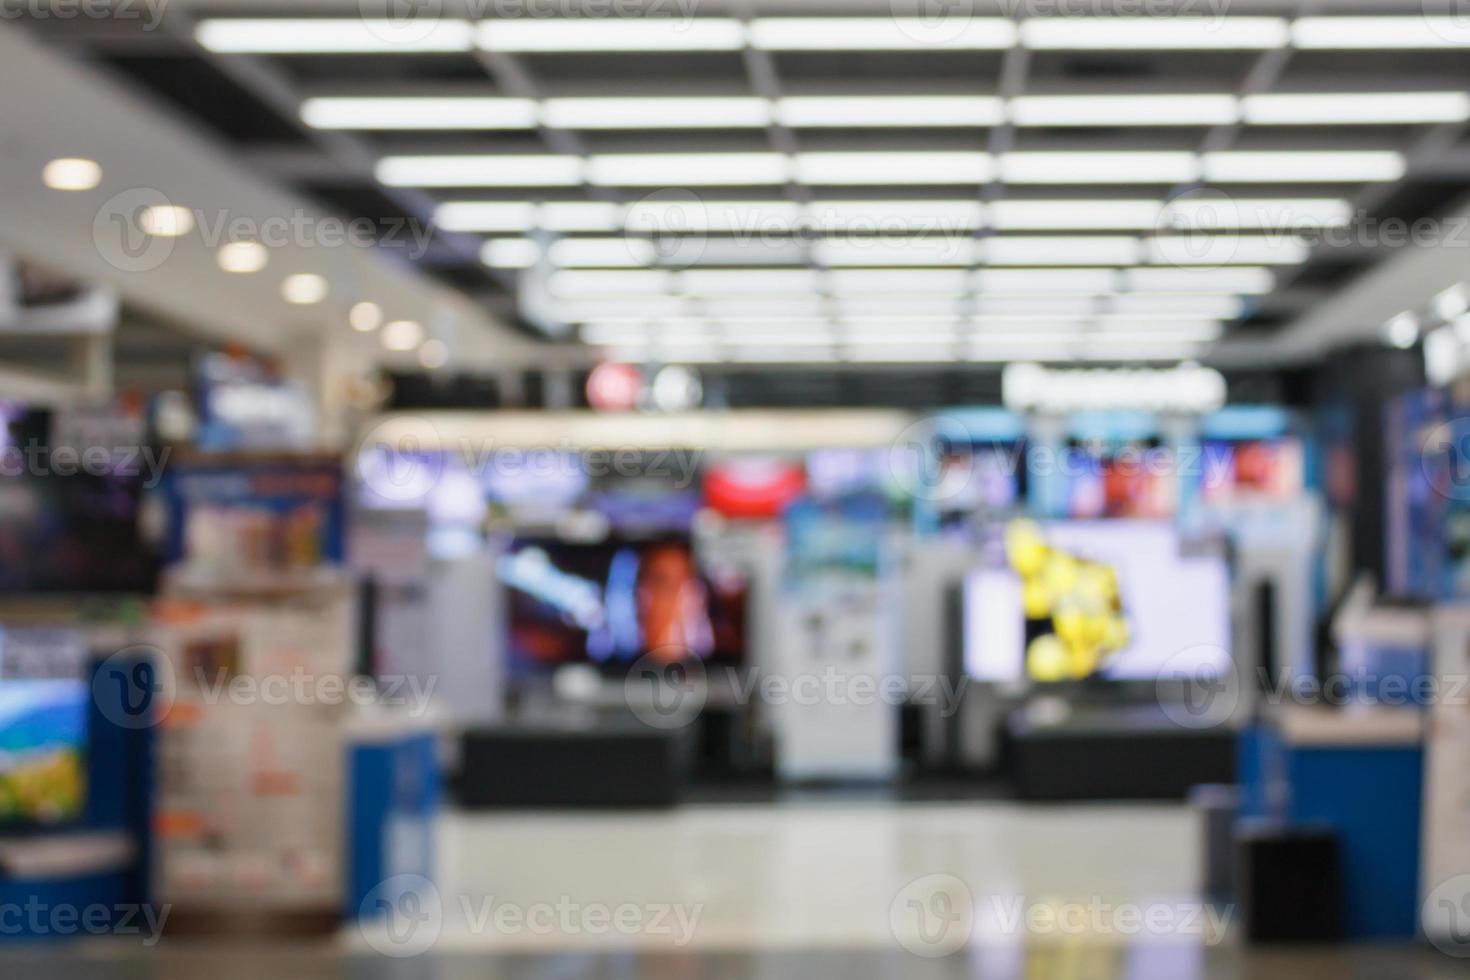 televisie smart tv's 4k ultra hd-weergave op planken in elektronisch warenhuis wazige achtergrond foto